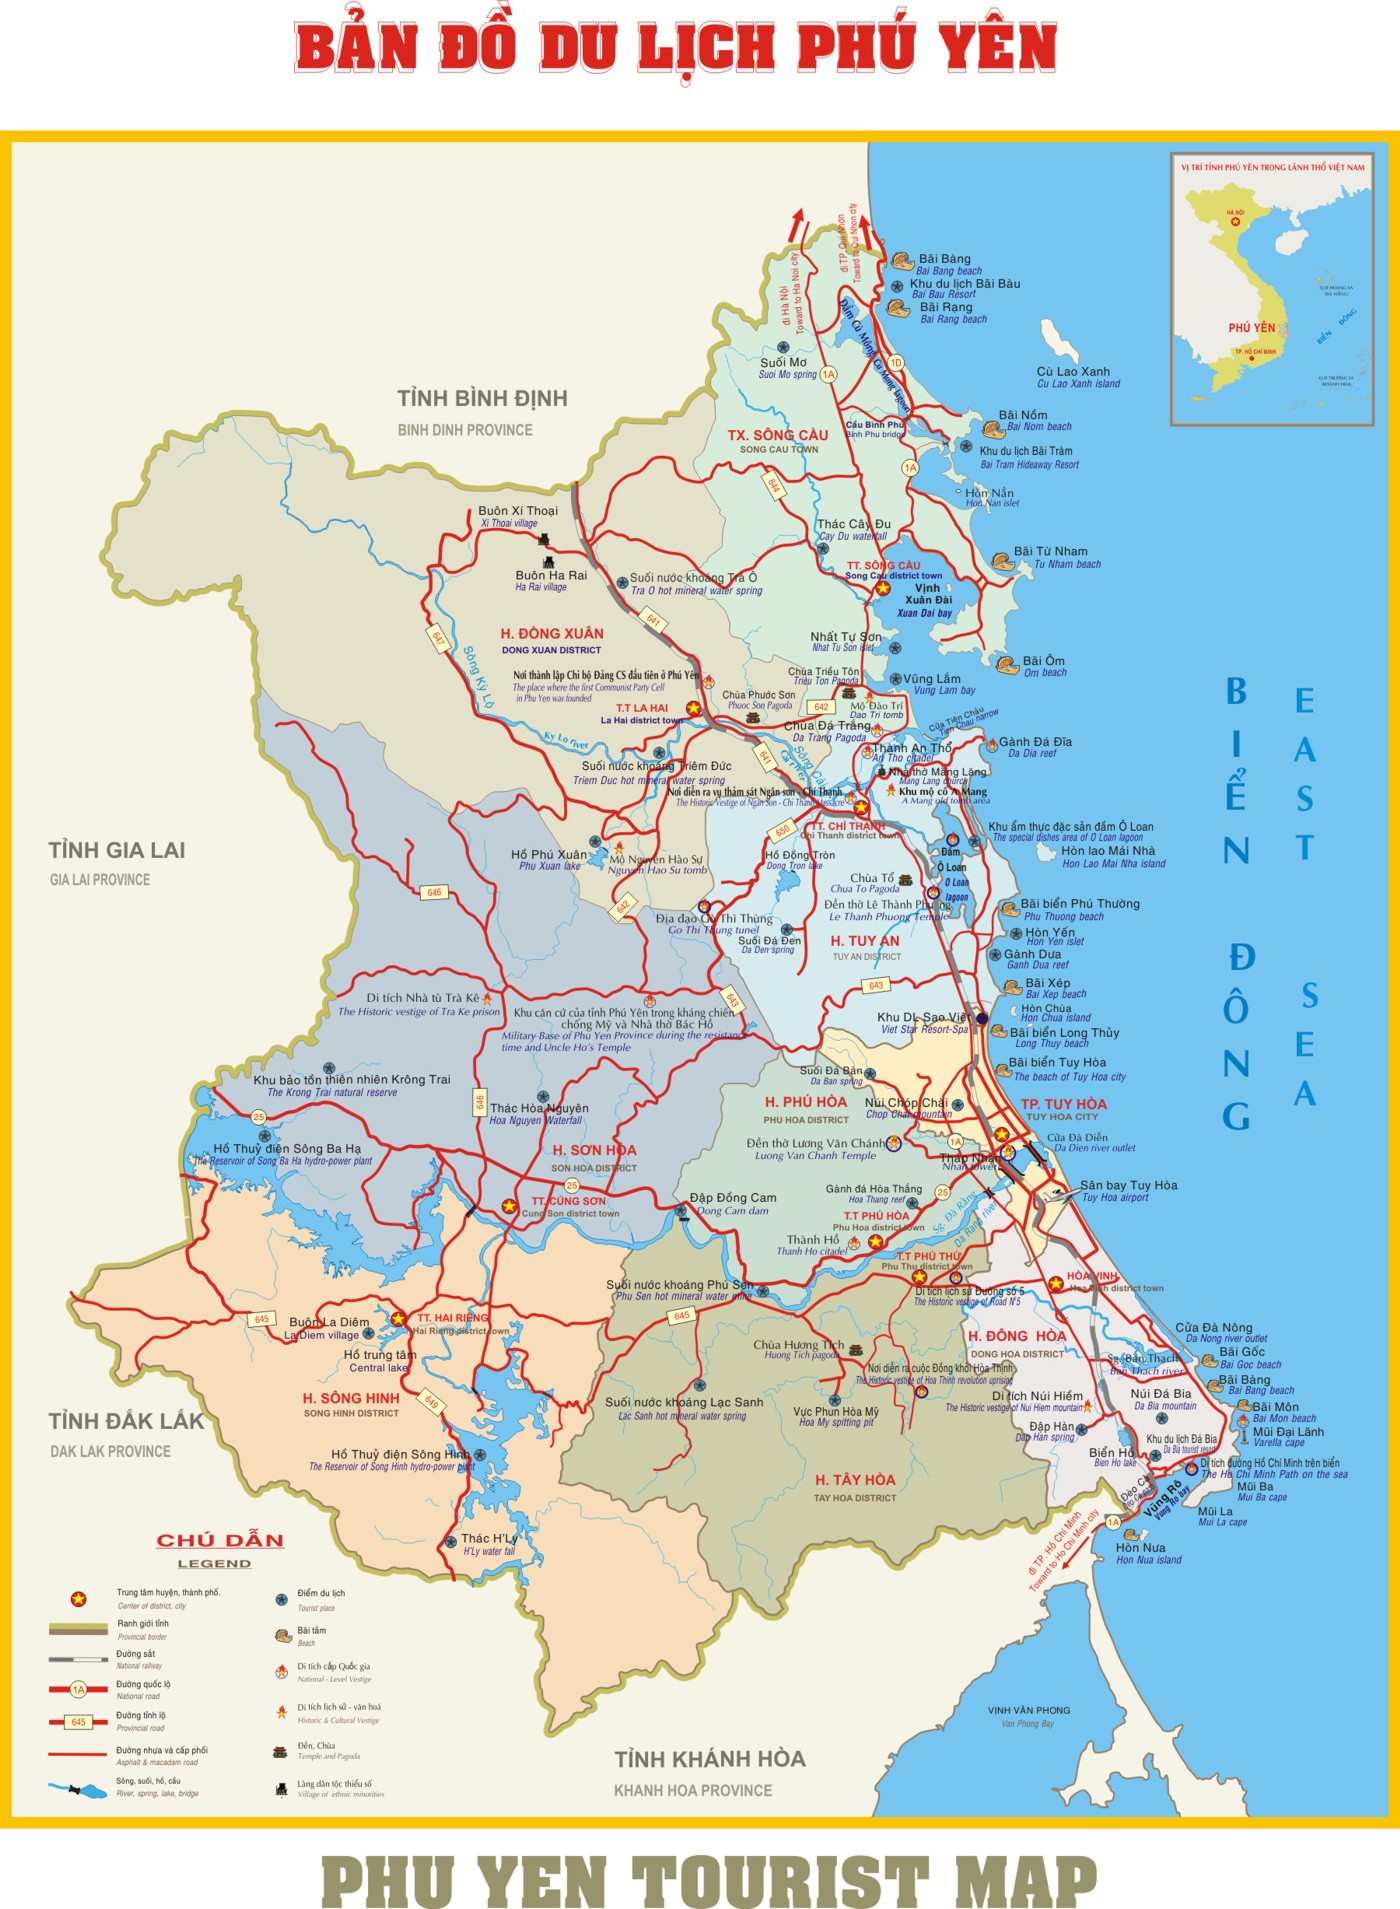 Bản đồ hành chính Phú Yên 2024 cung cấp cho bạn cái nhìn tổng thể về sự phát triển nhanh chóng của tỉnh. Với các tài nguyên đa dạng và sự đầu tư mạnh mẽ vào hạ tầng, Phú Yên đang trở thành điểm đến du lịch hấp dẫn. Hãy cùng khám phá và trải nghiệm những điều thú vị tại đây.